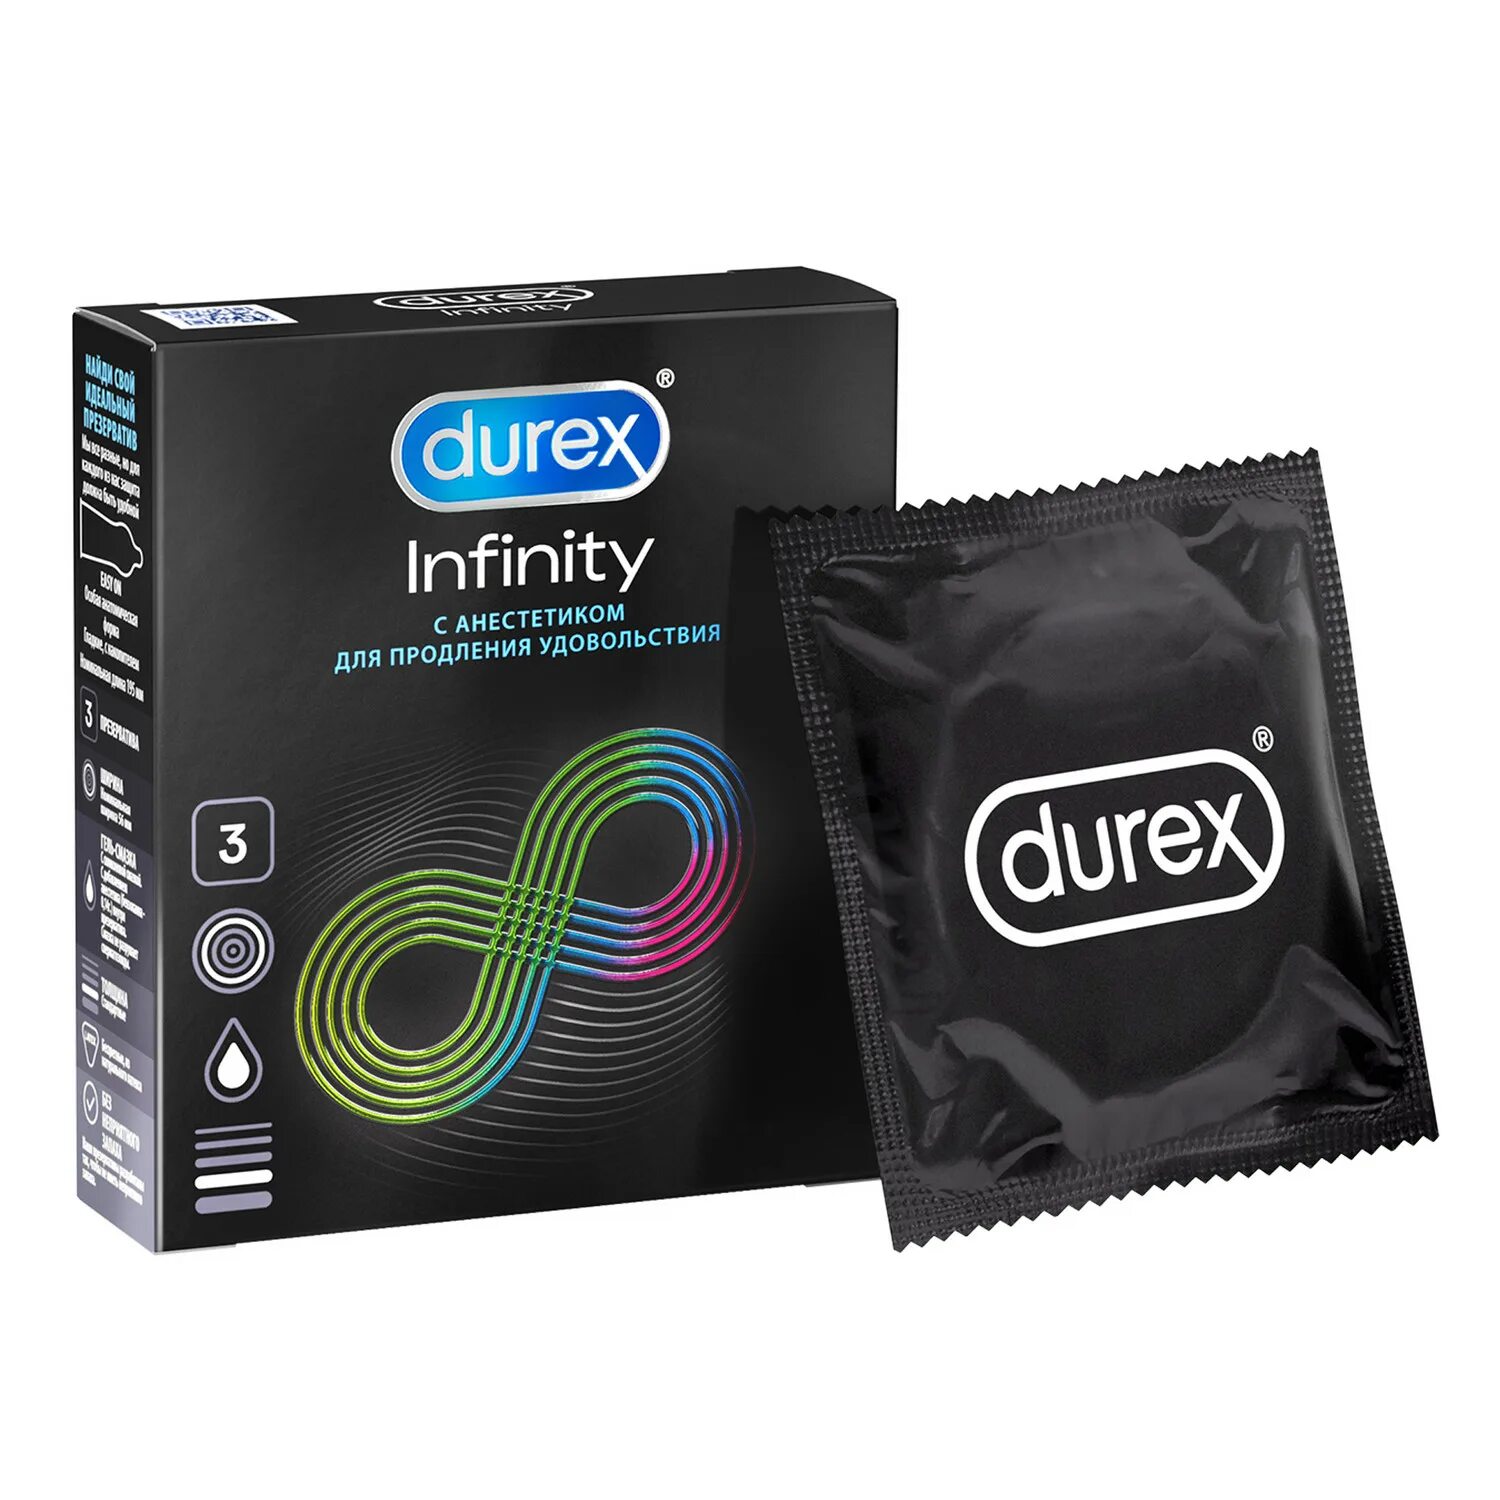 Презервативы Durex Infinity (с анестетиком) №12. Durex Infinity презервативы с анестетиком №3. Durex Infinity презервативы с анестетиком, 12 шт. Дюрекс Инфинити черный презерватив.